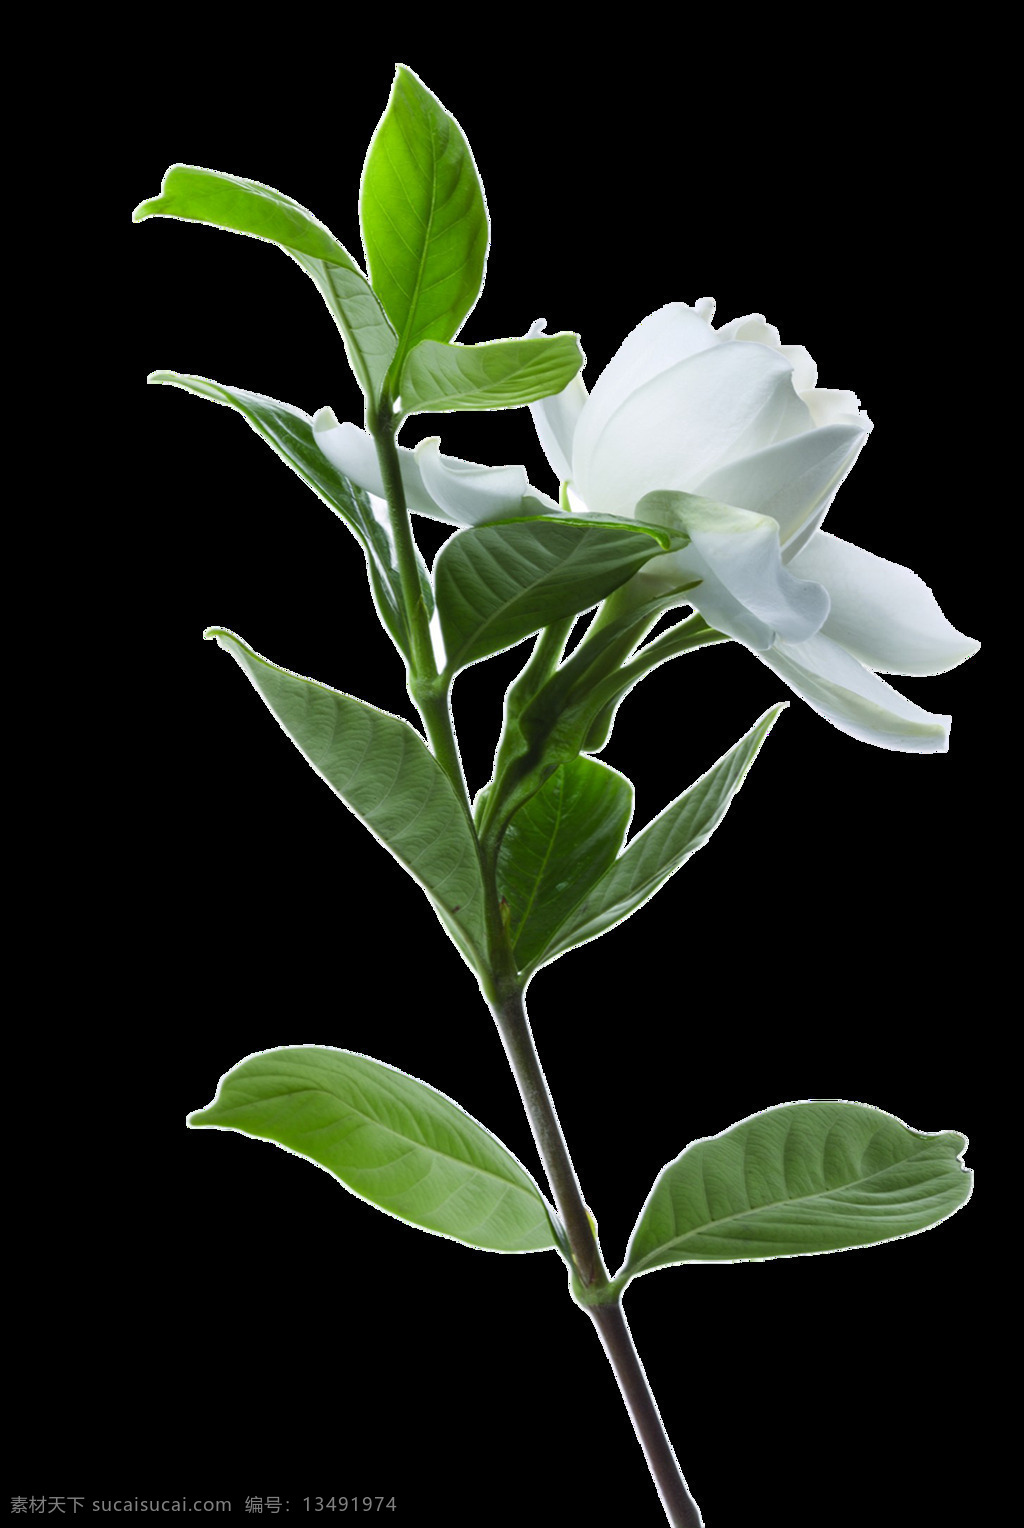 白色 玫瑰花 玫瑰花素材 底纹背景 鲜花摄影 美丽鲜花 花卉花草 漂亮花朵 鲜艳花朵 花草植物 绿色叶子